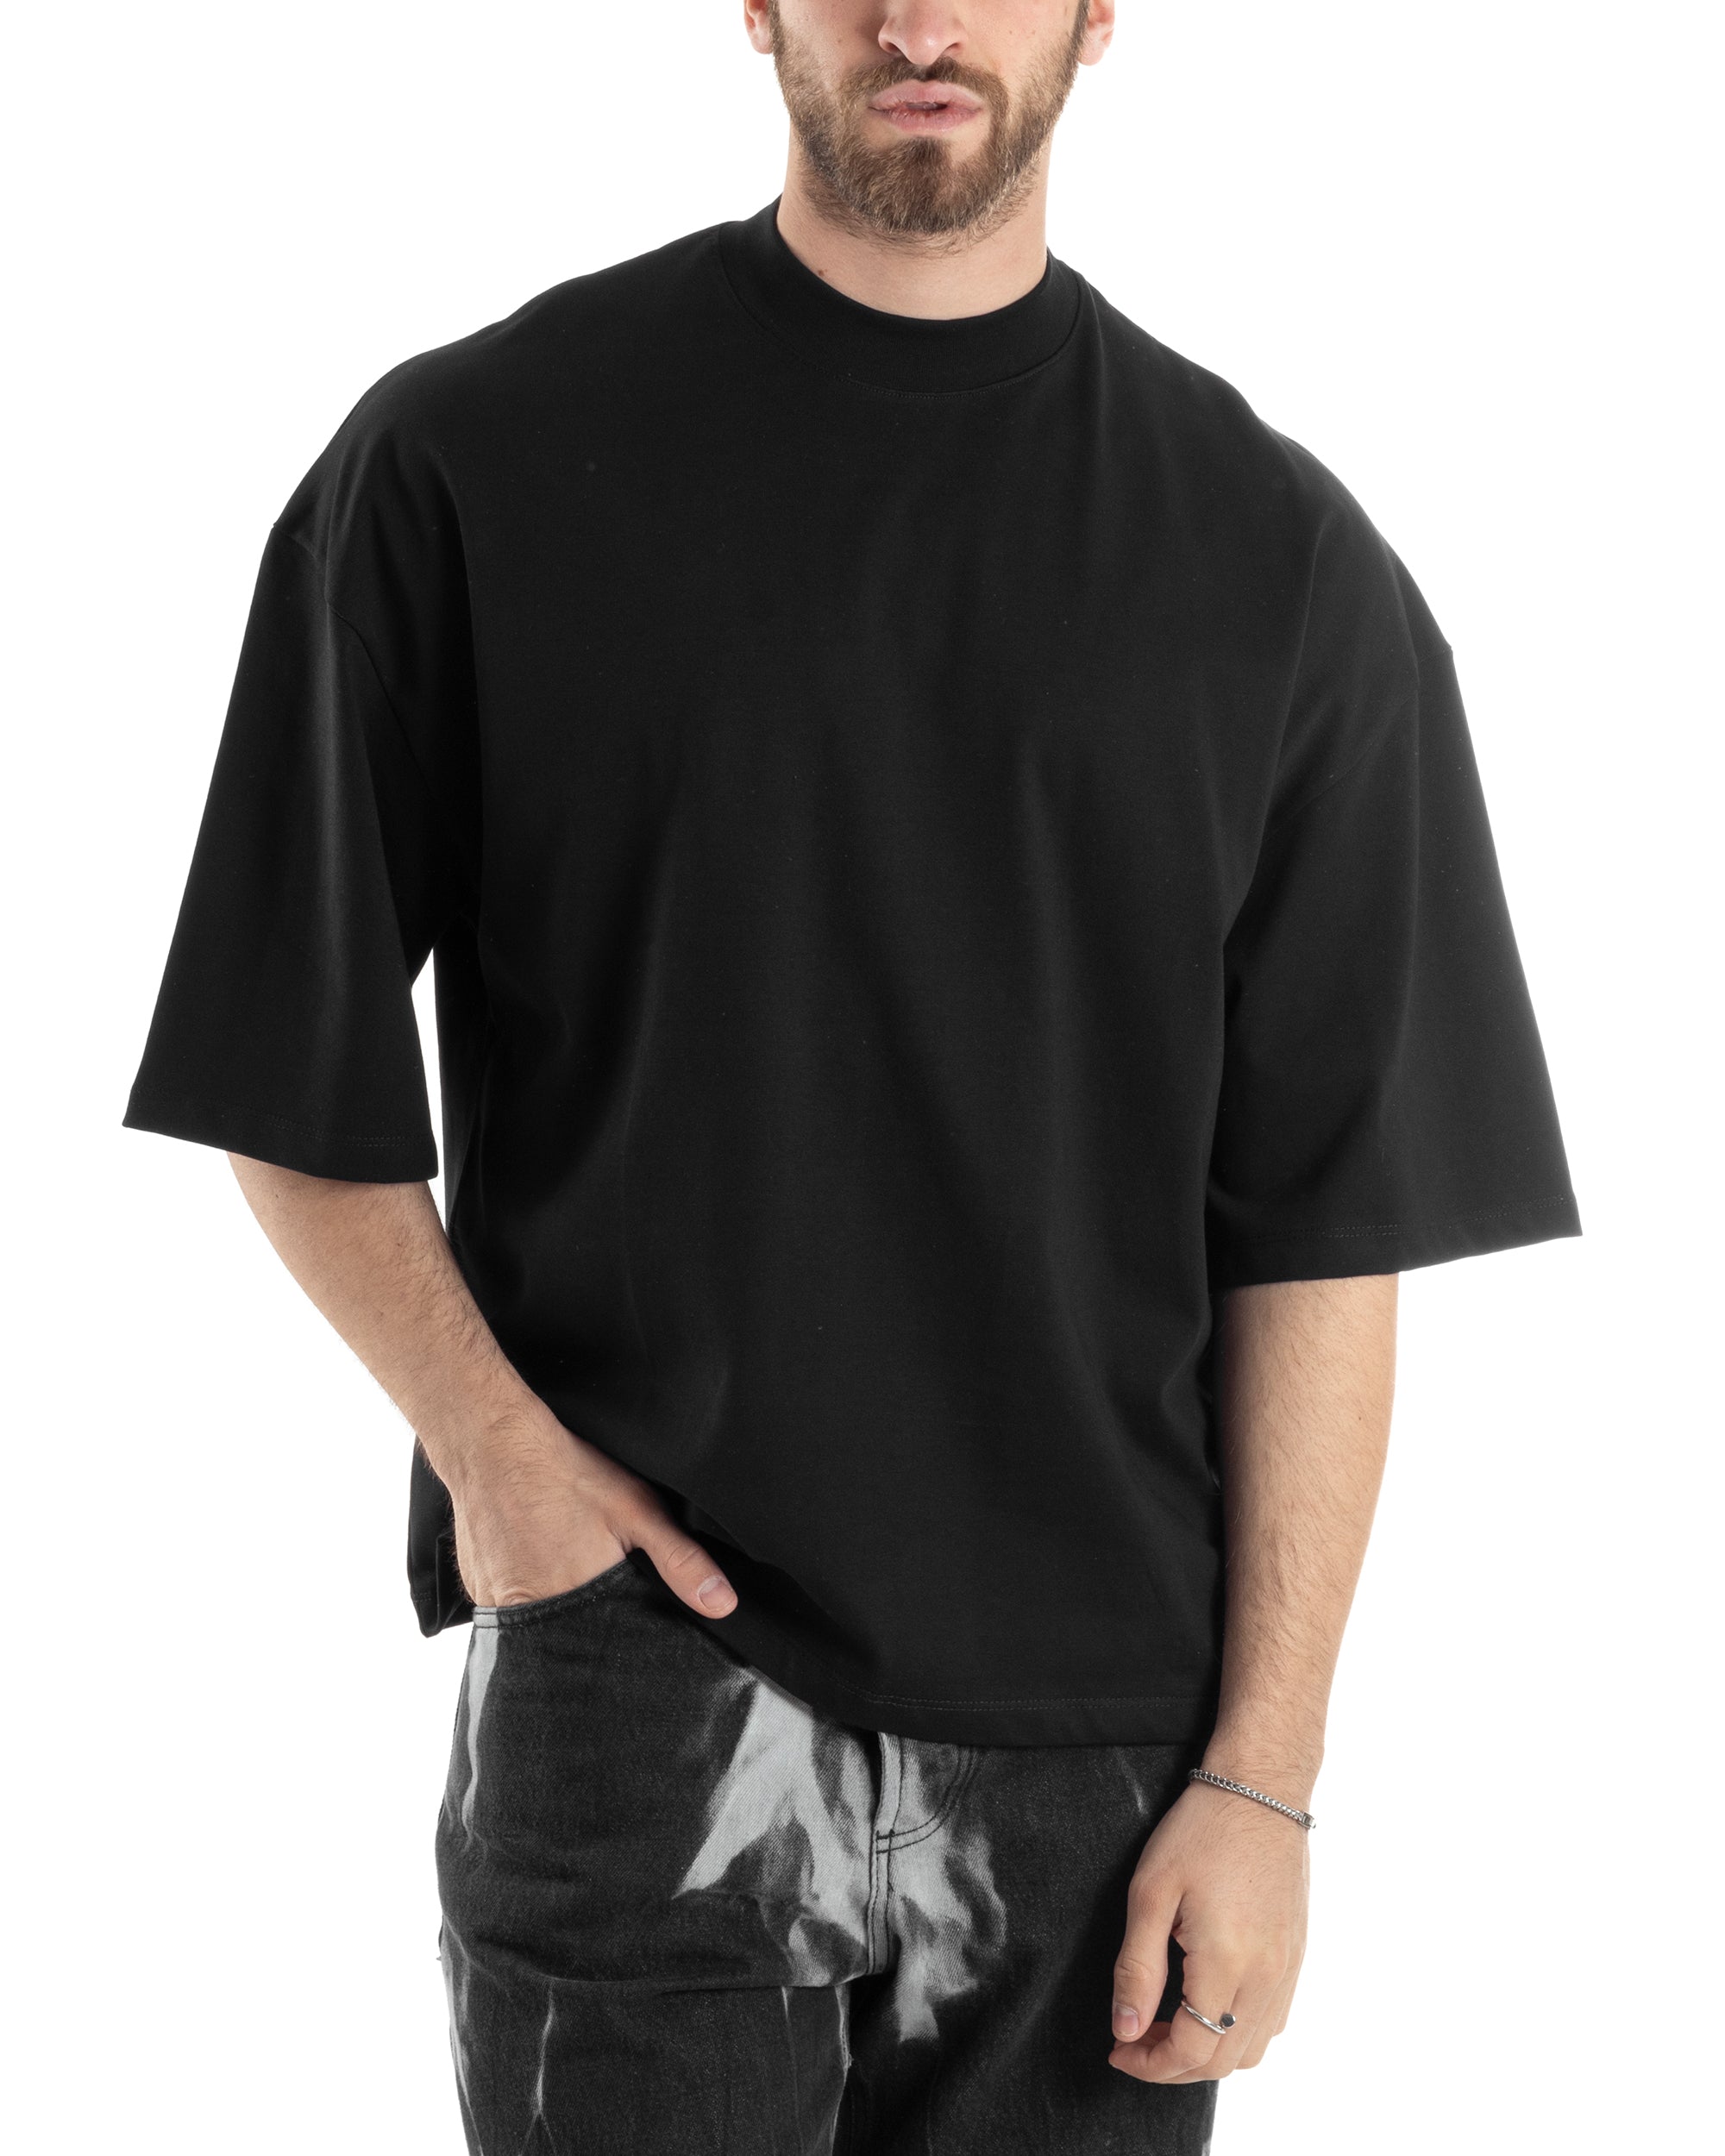 T-shirt Uomo Girocollo Boxy Fit Oversize Cotone Spalla Scesa Gola Alta Casual Basic Nero GIOSAL-TS3023A